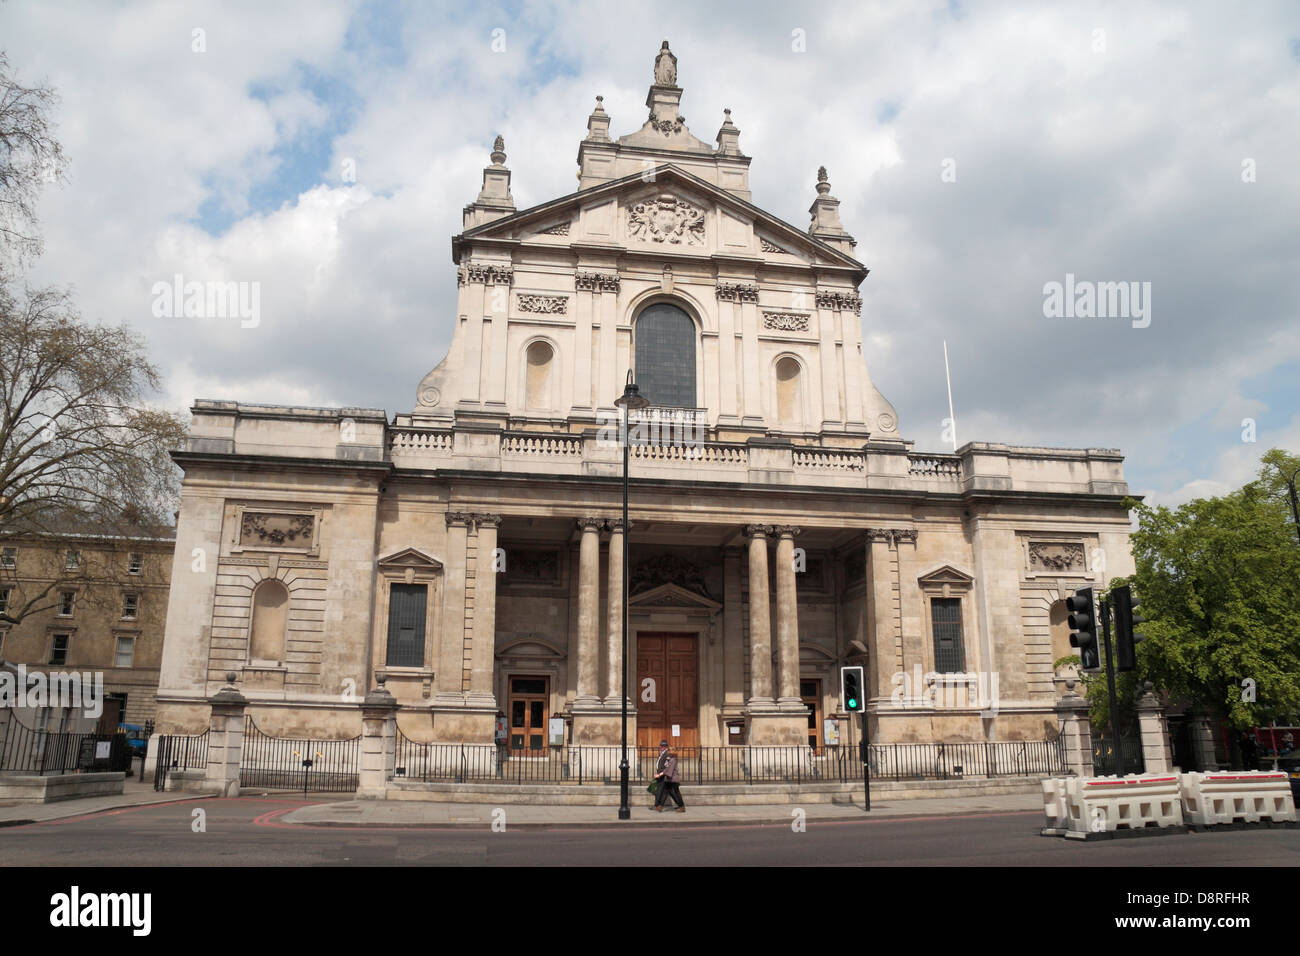 L'Eglise catholique romaine du Cœur immaculé de Marie, plus connue sous le nom de Brompton Oratory, Brompton Road, Londres SW7 2RP, au Royaume-Uni. Banque D'Images